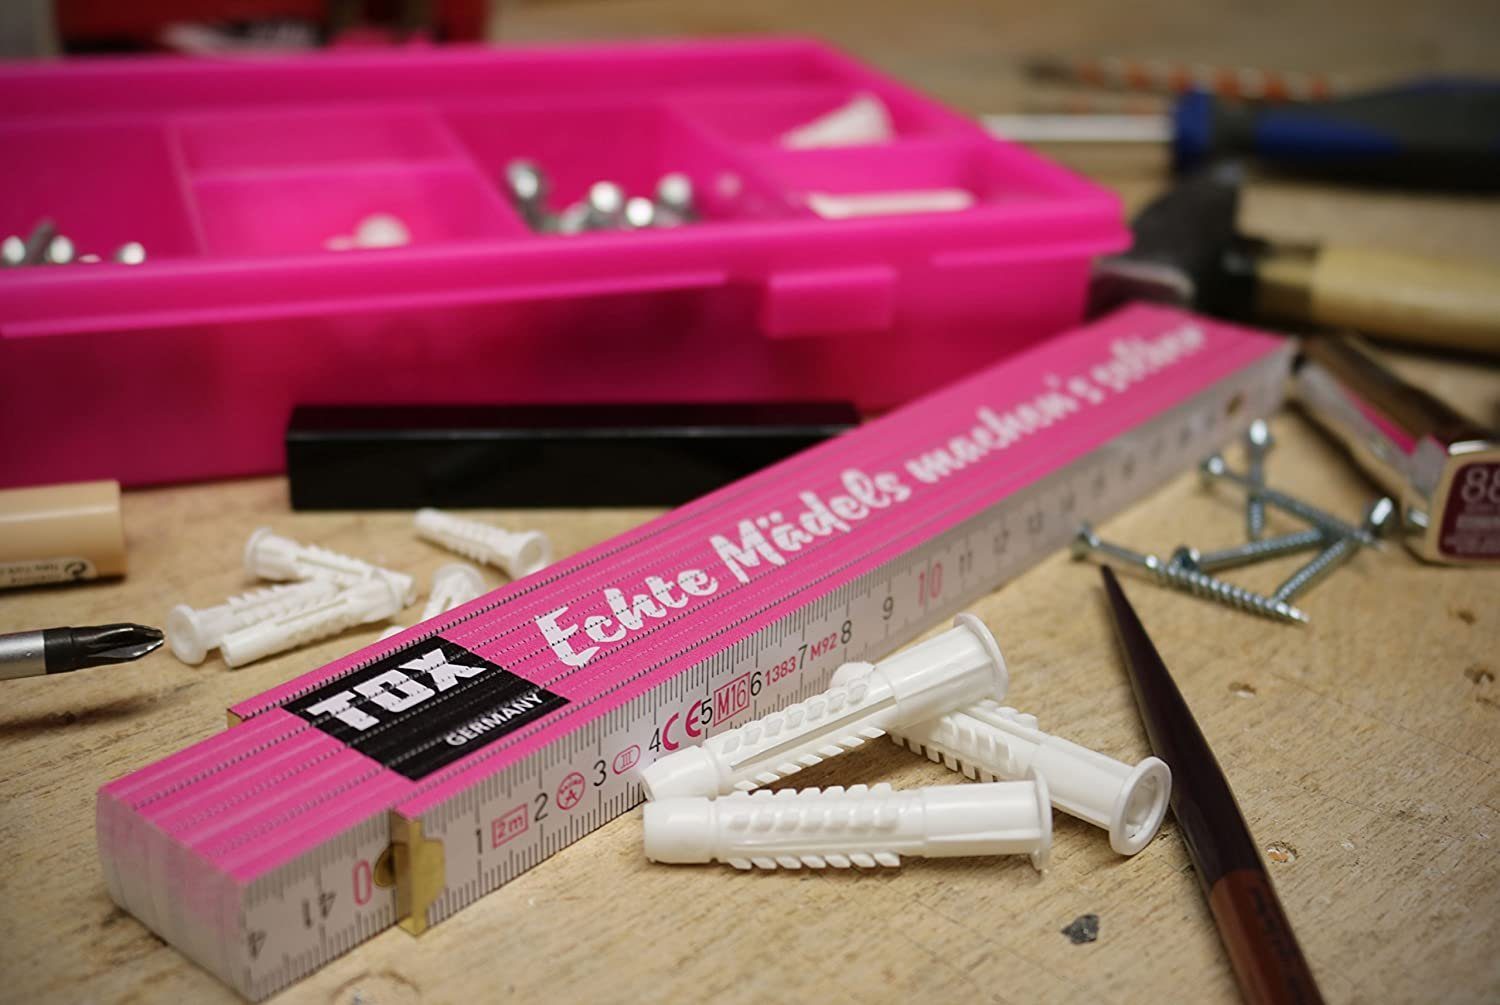 Beschriftung, Zollstock Meterstab meter, mit TOX-DÜBEL-TECHNIK cooler farbenfroh Farben und verschiedenen 2 verschiedenen (pink/weiß) in machen's mit Mädels Echte selbst" Sprüchen